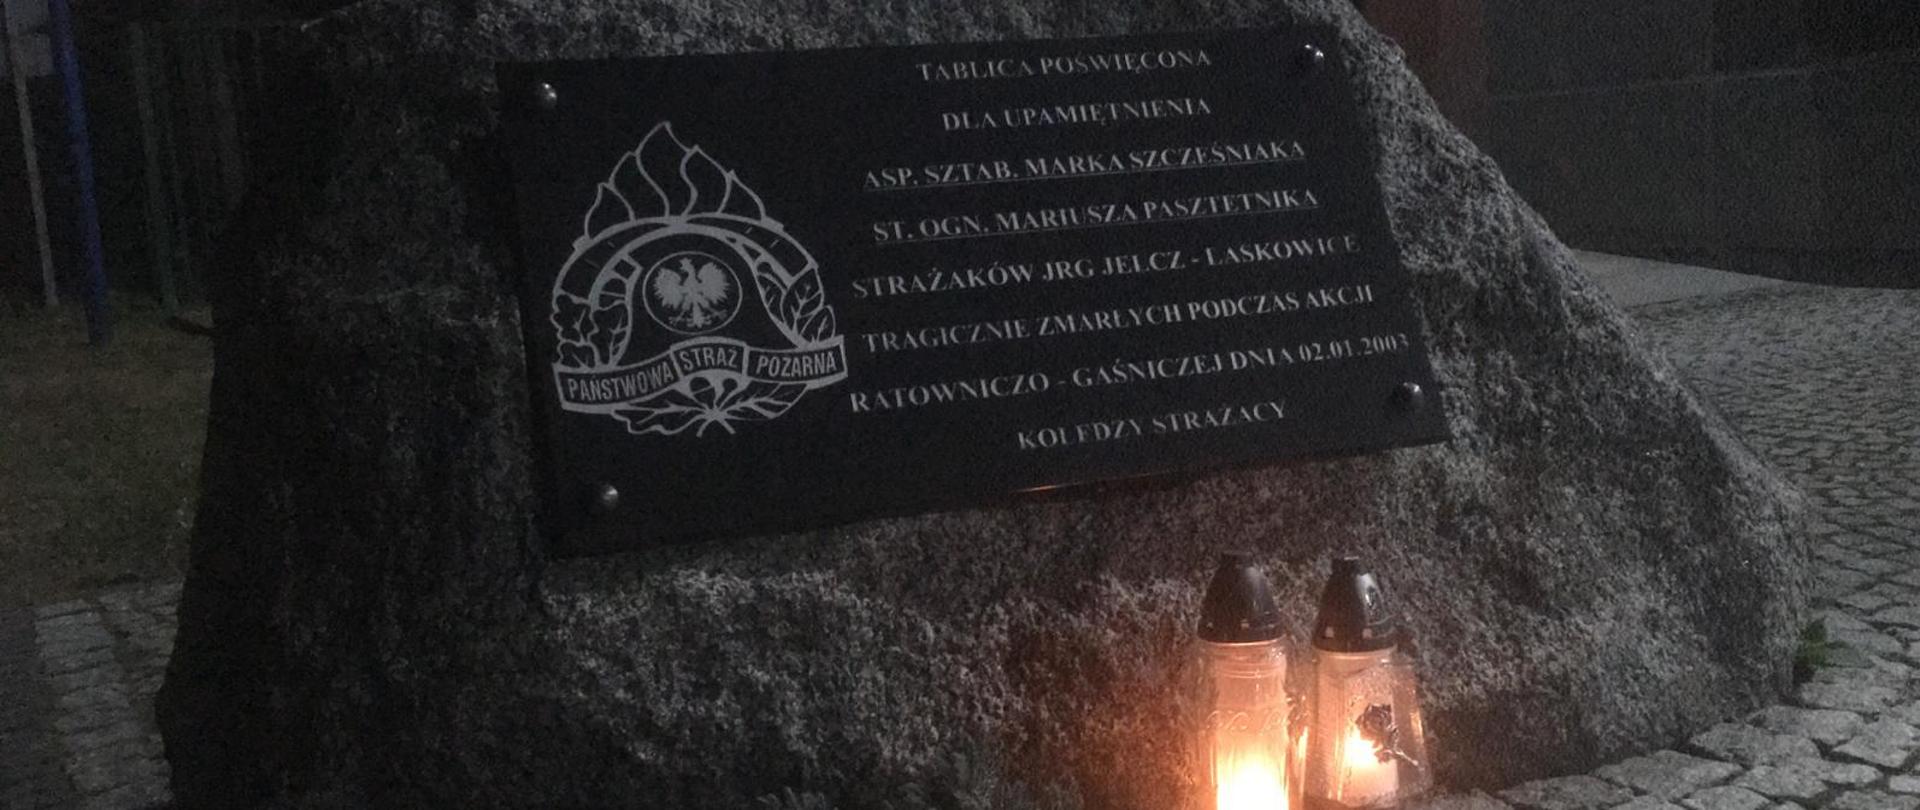 Na zdjęciu widać pamiątkowy obelisk z tablicą poświęconą pamięci dwóch strażaków, którzy zginęli podczas akcji ratowniczo-gaśniczej